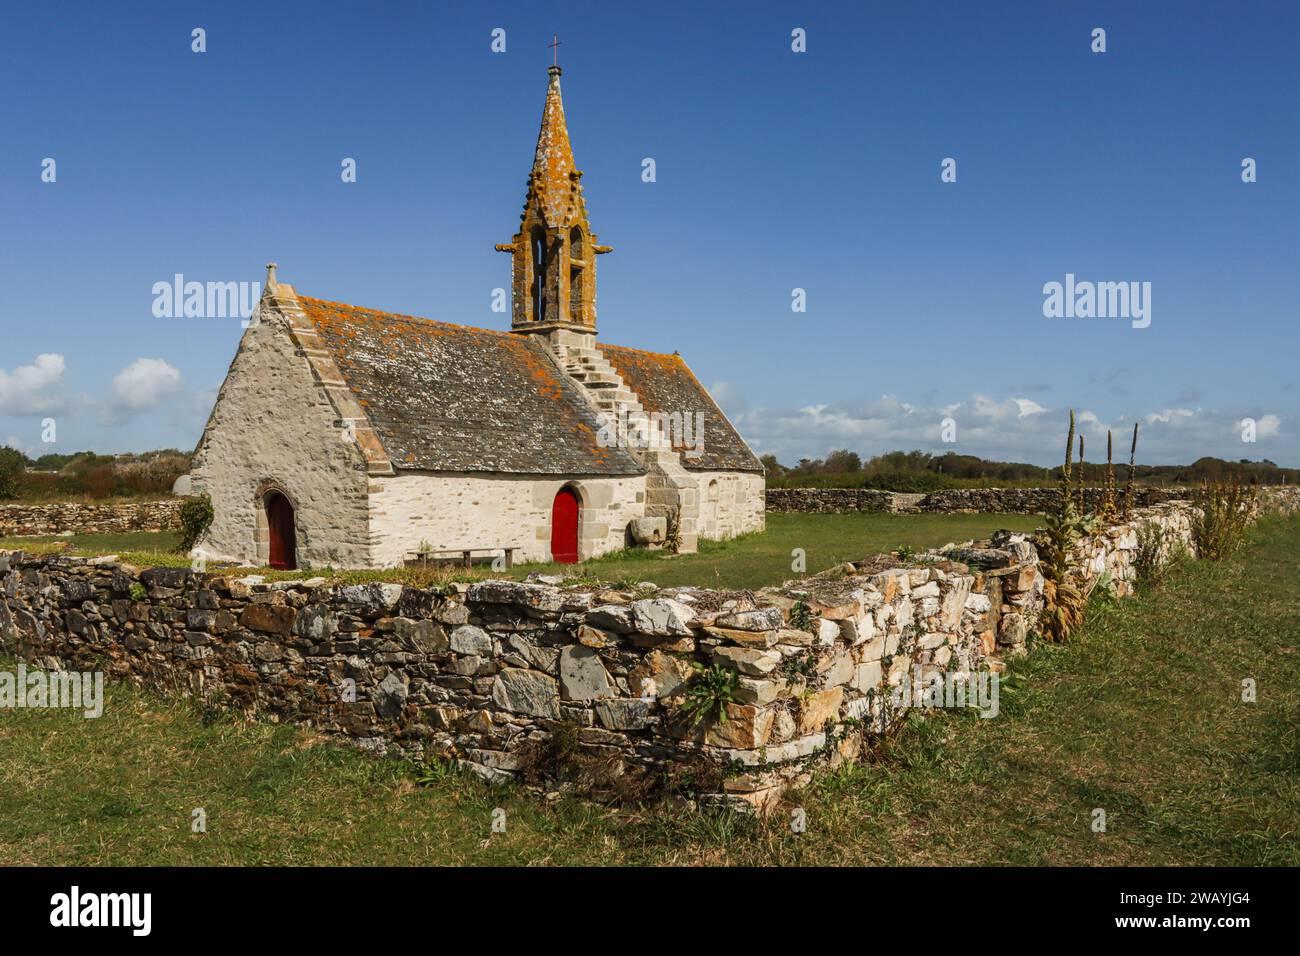 La bellissima cappella Saint-Vio e un muro a secco nella campagna del Pays Bigouden in Bretagna, Francia Foto Stock